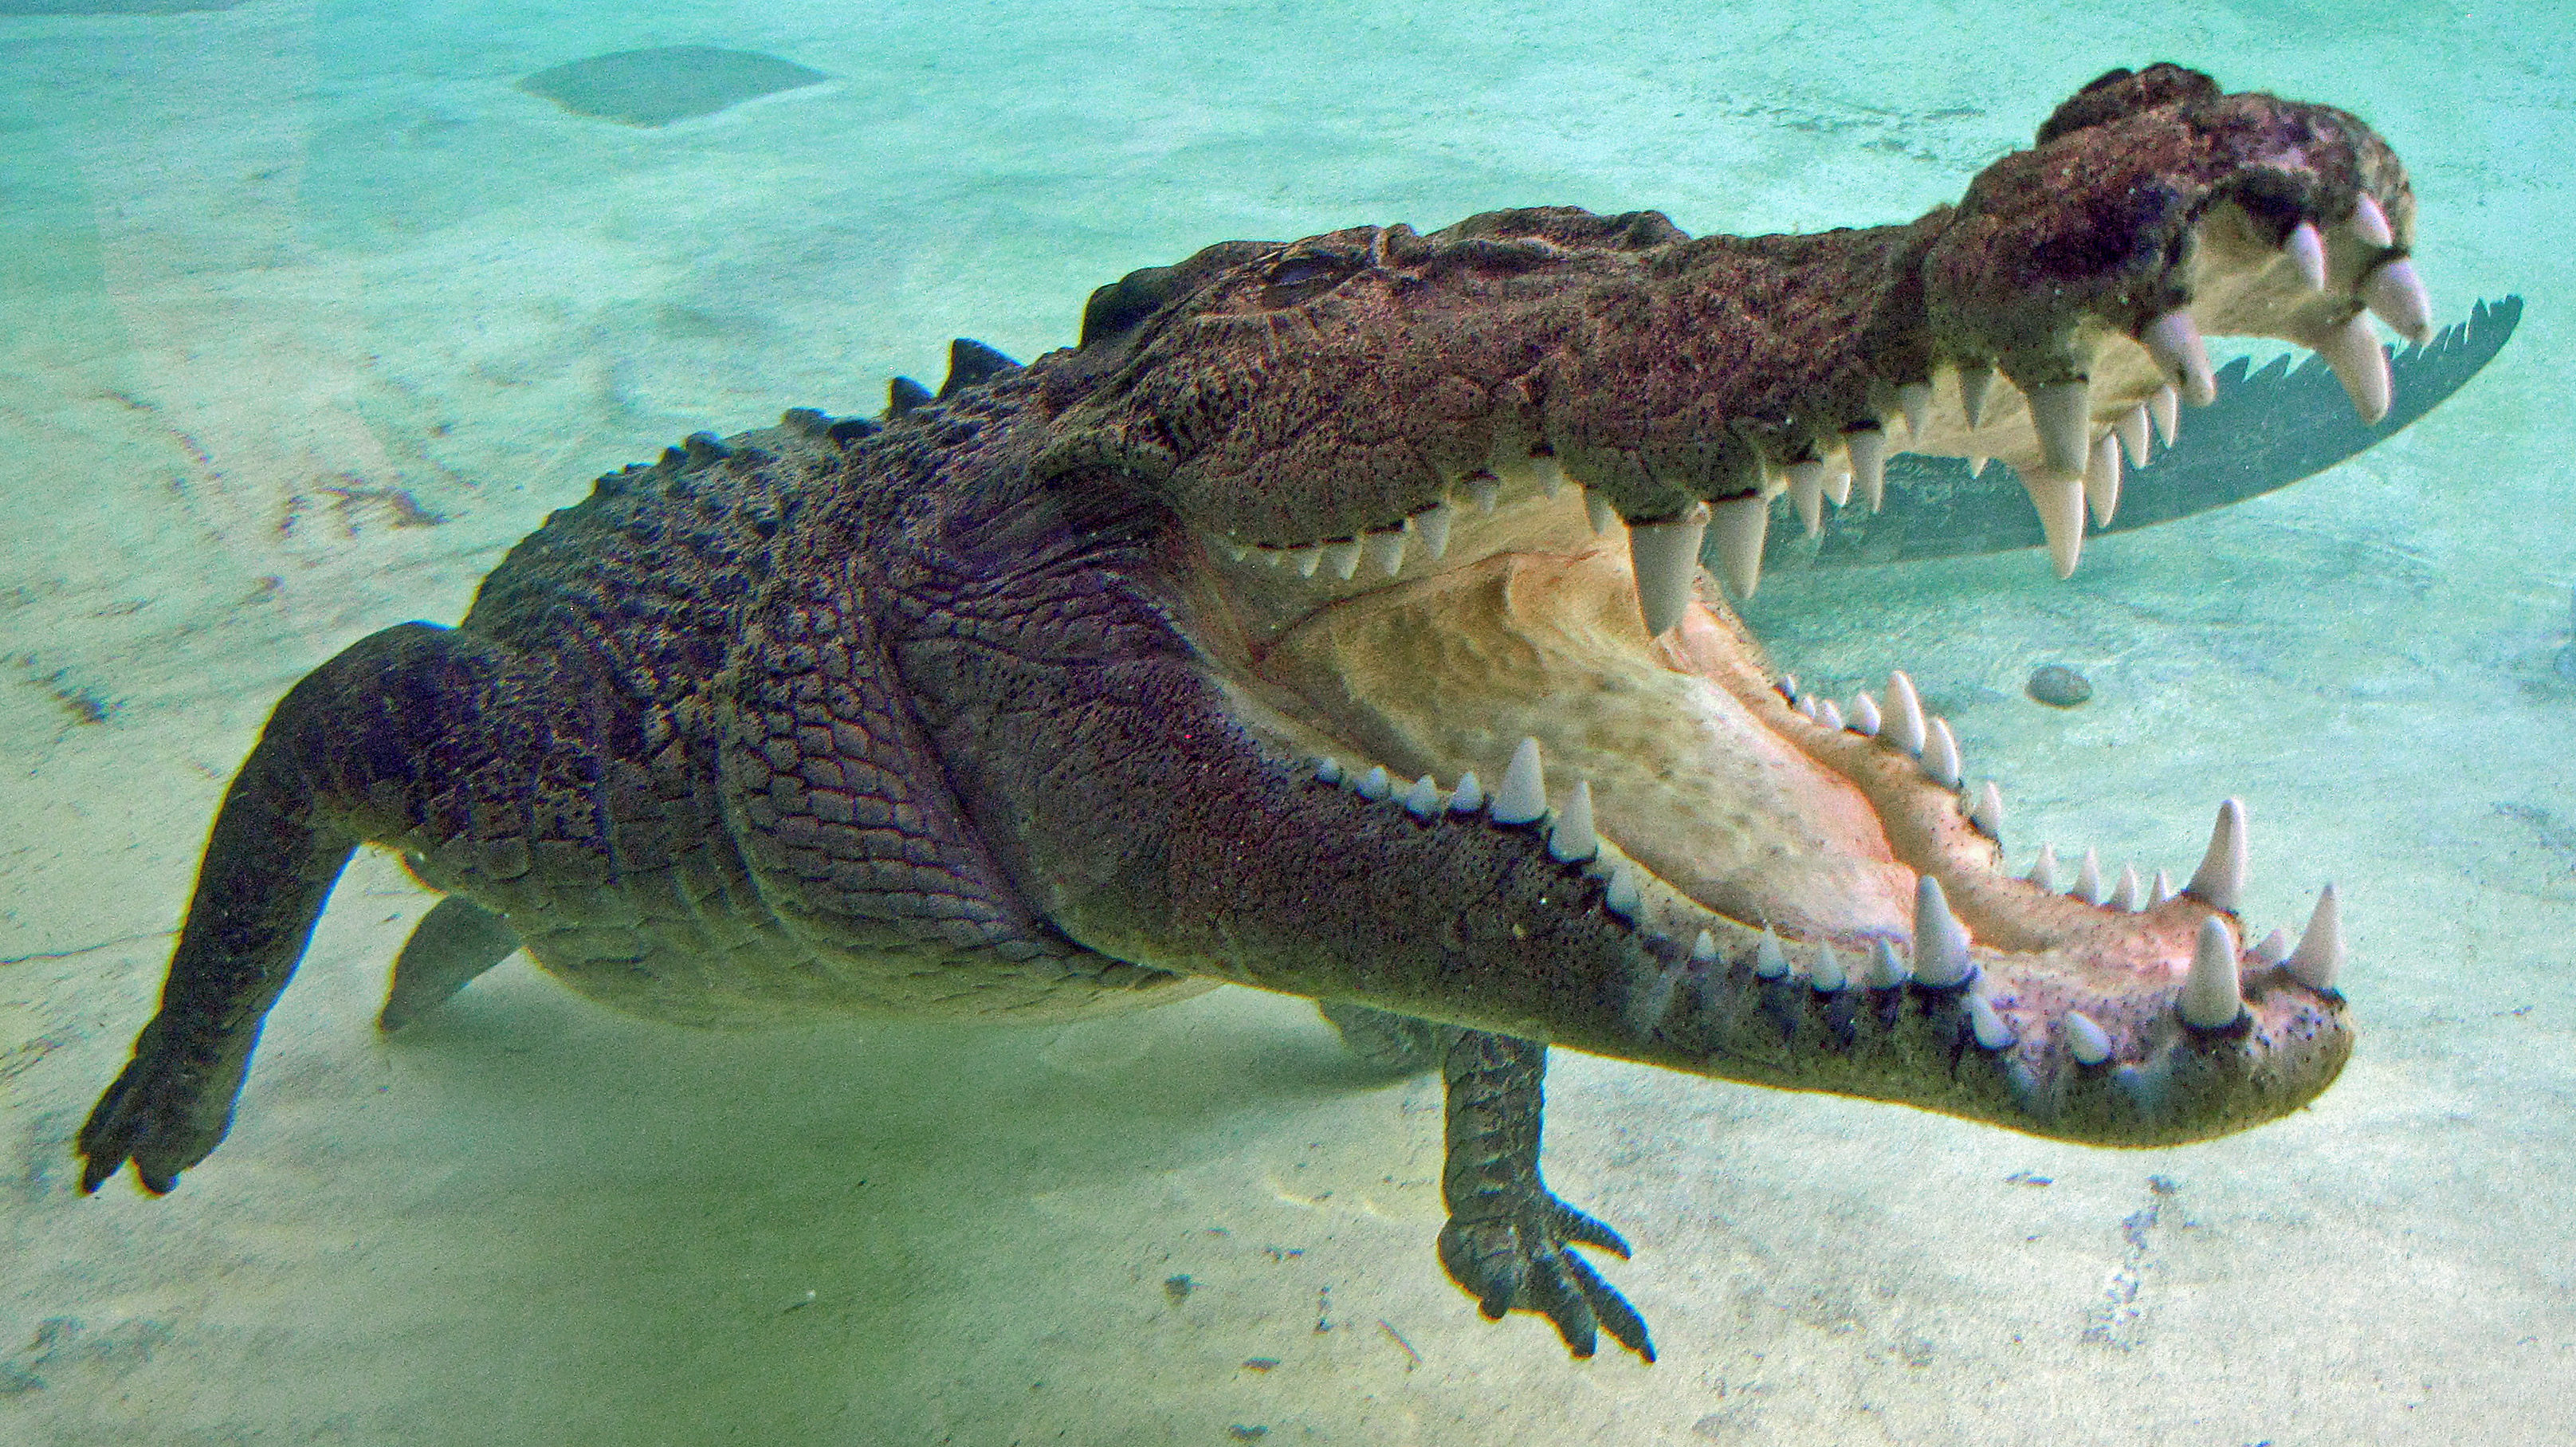 Emberi maradványokat találtak egy hatalmas krokodilban